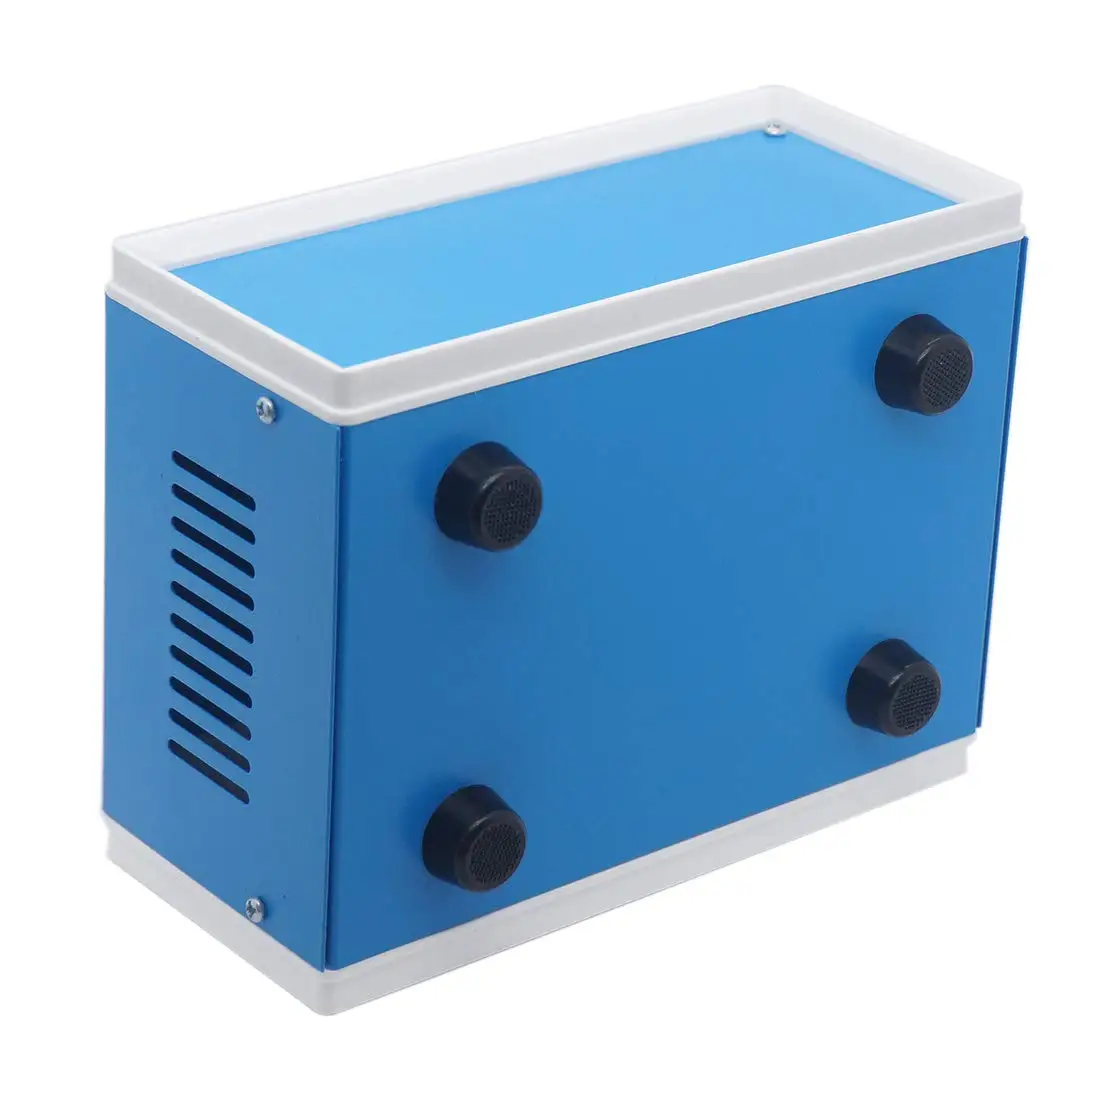 Blue Metal Project DIY Junction Box Електронни кутии Превантивен корпус AU-5 XD-5 170 * 130 * 80mm / 6.7 